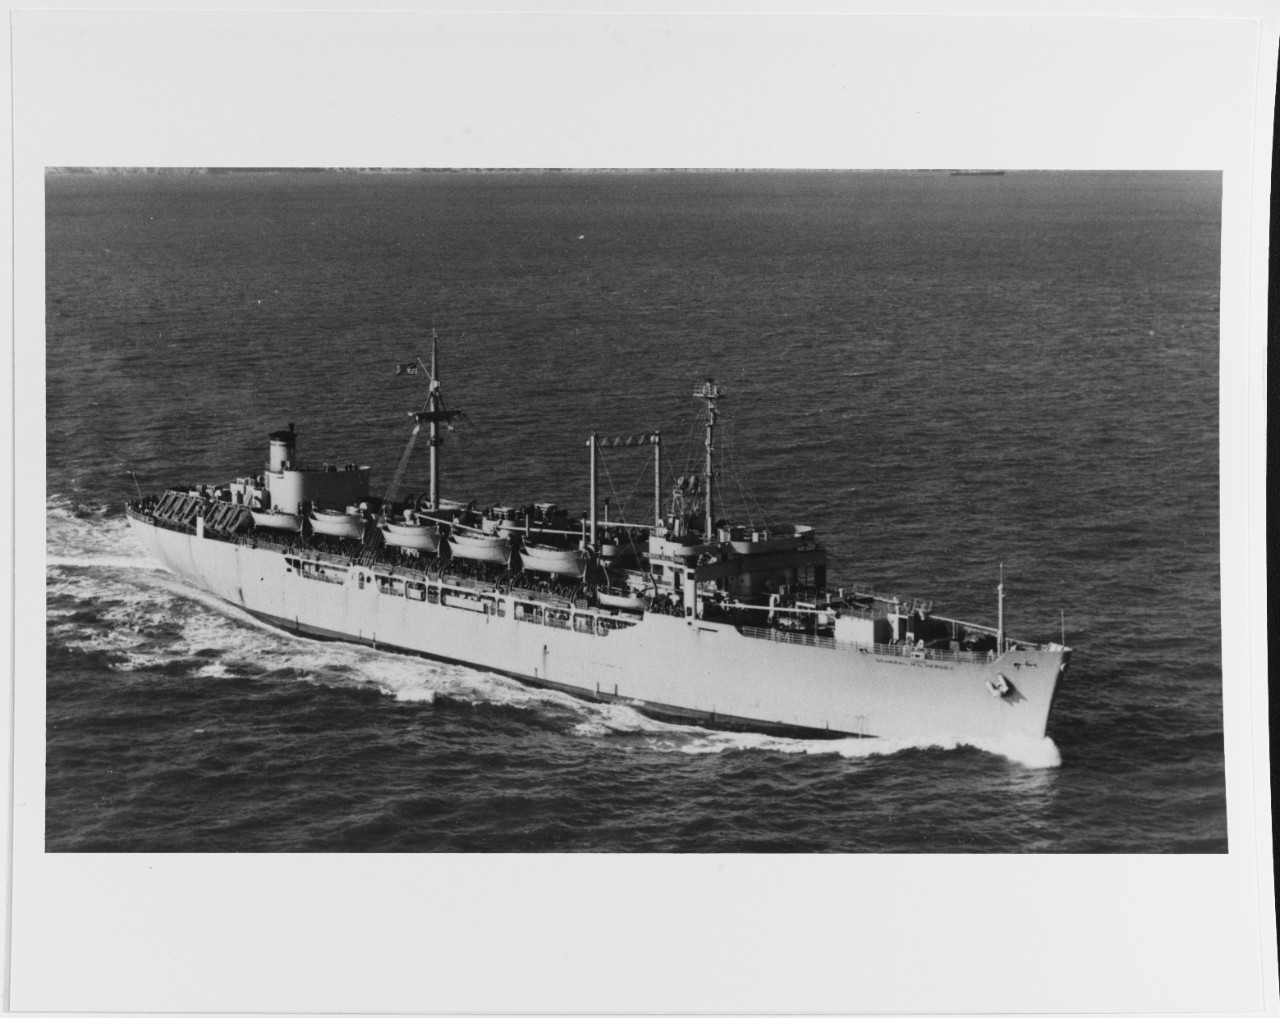 USNS GEN. M. L. HERSEY (T-AP-148)